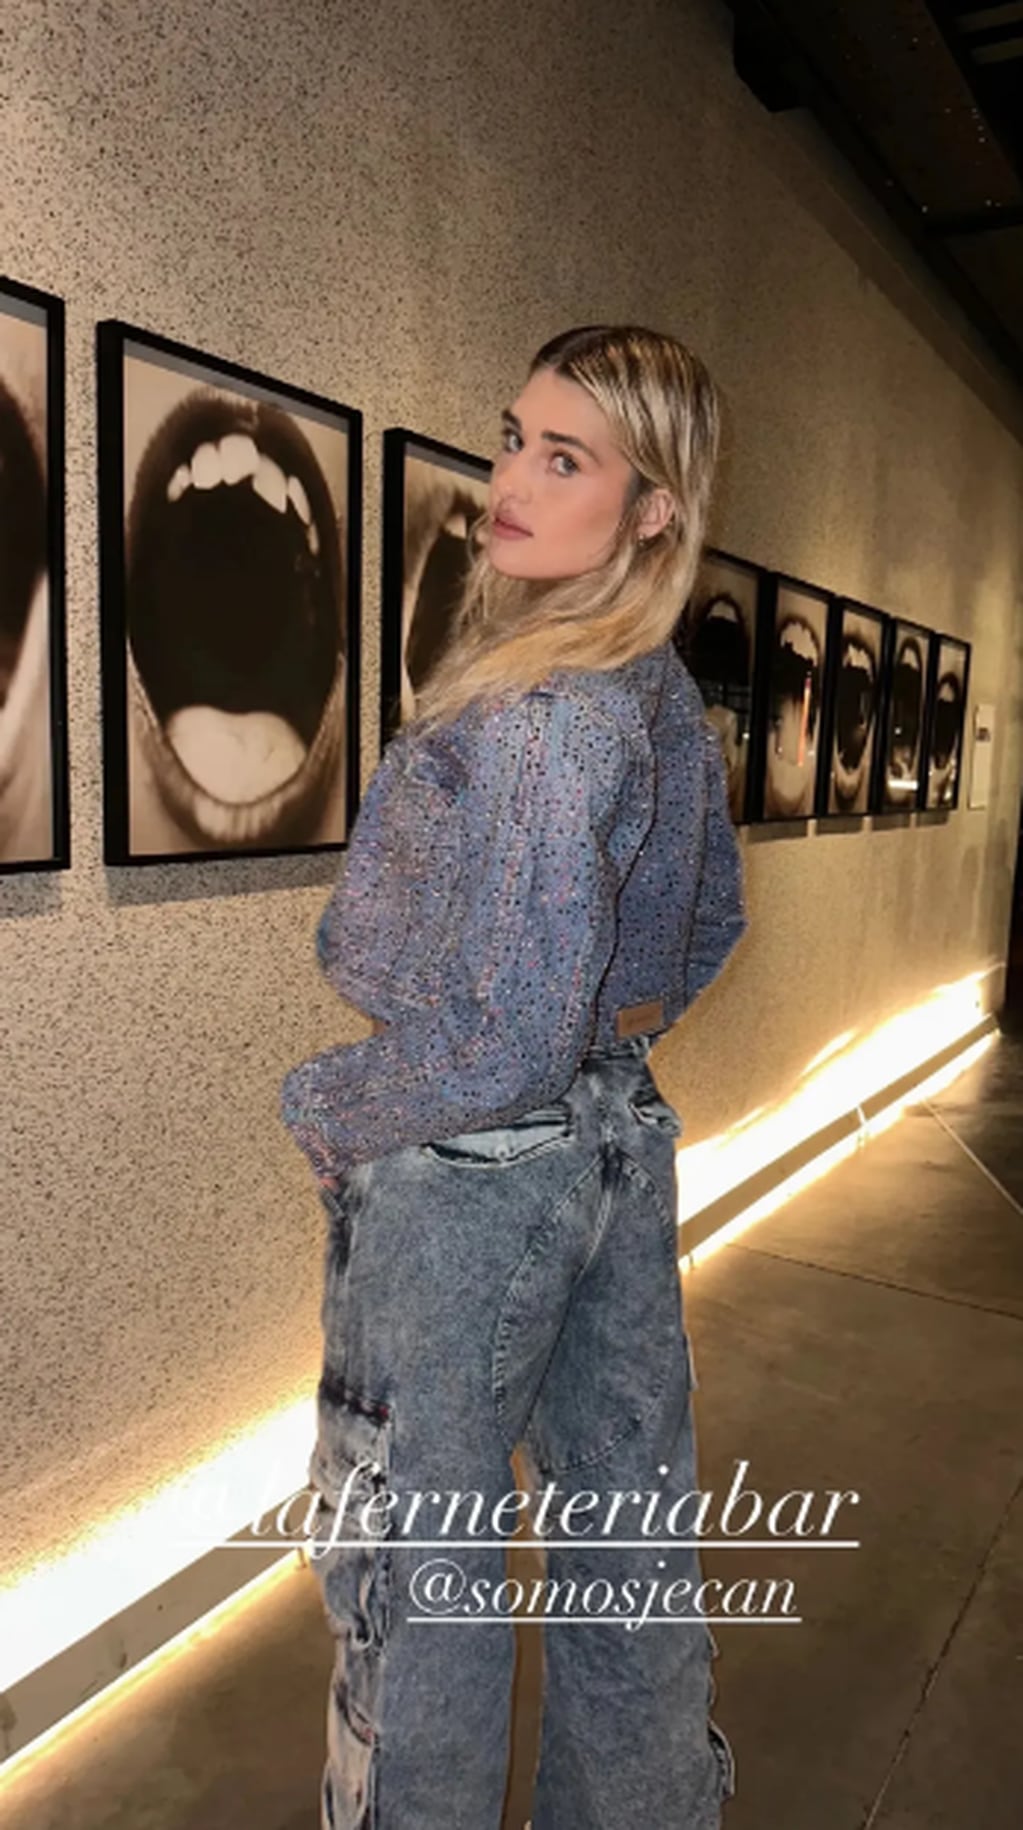 La joven mostró su fanatismo por los Jeans Cargo a través de las redes sociales / Foto: Instagram